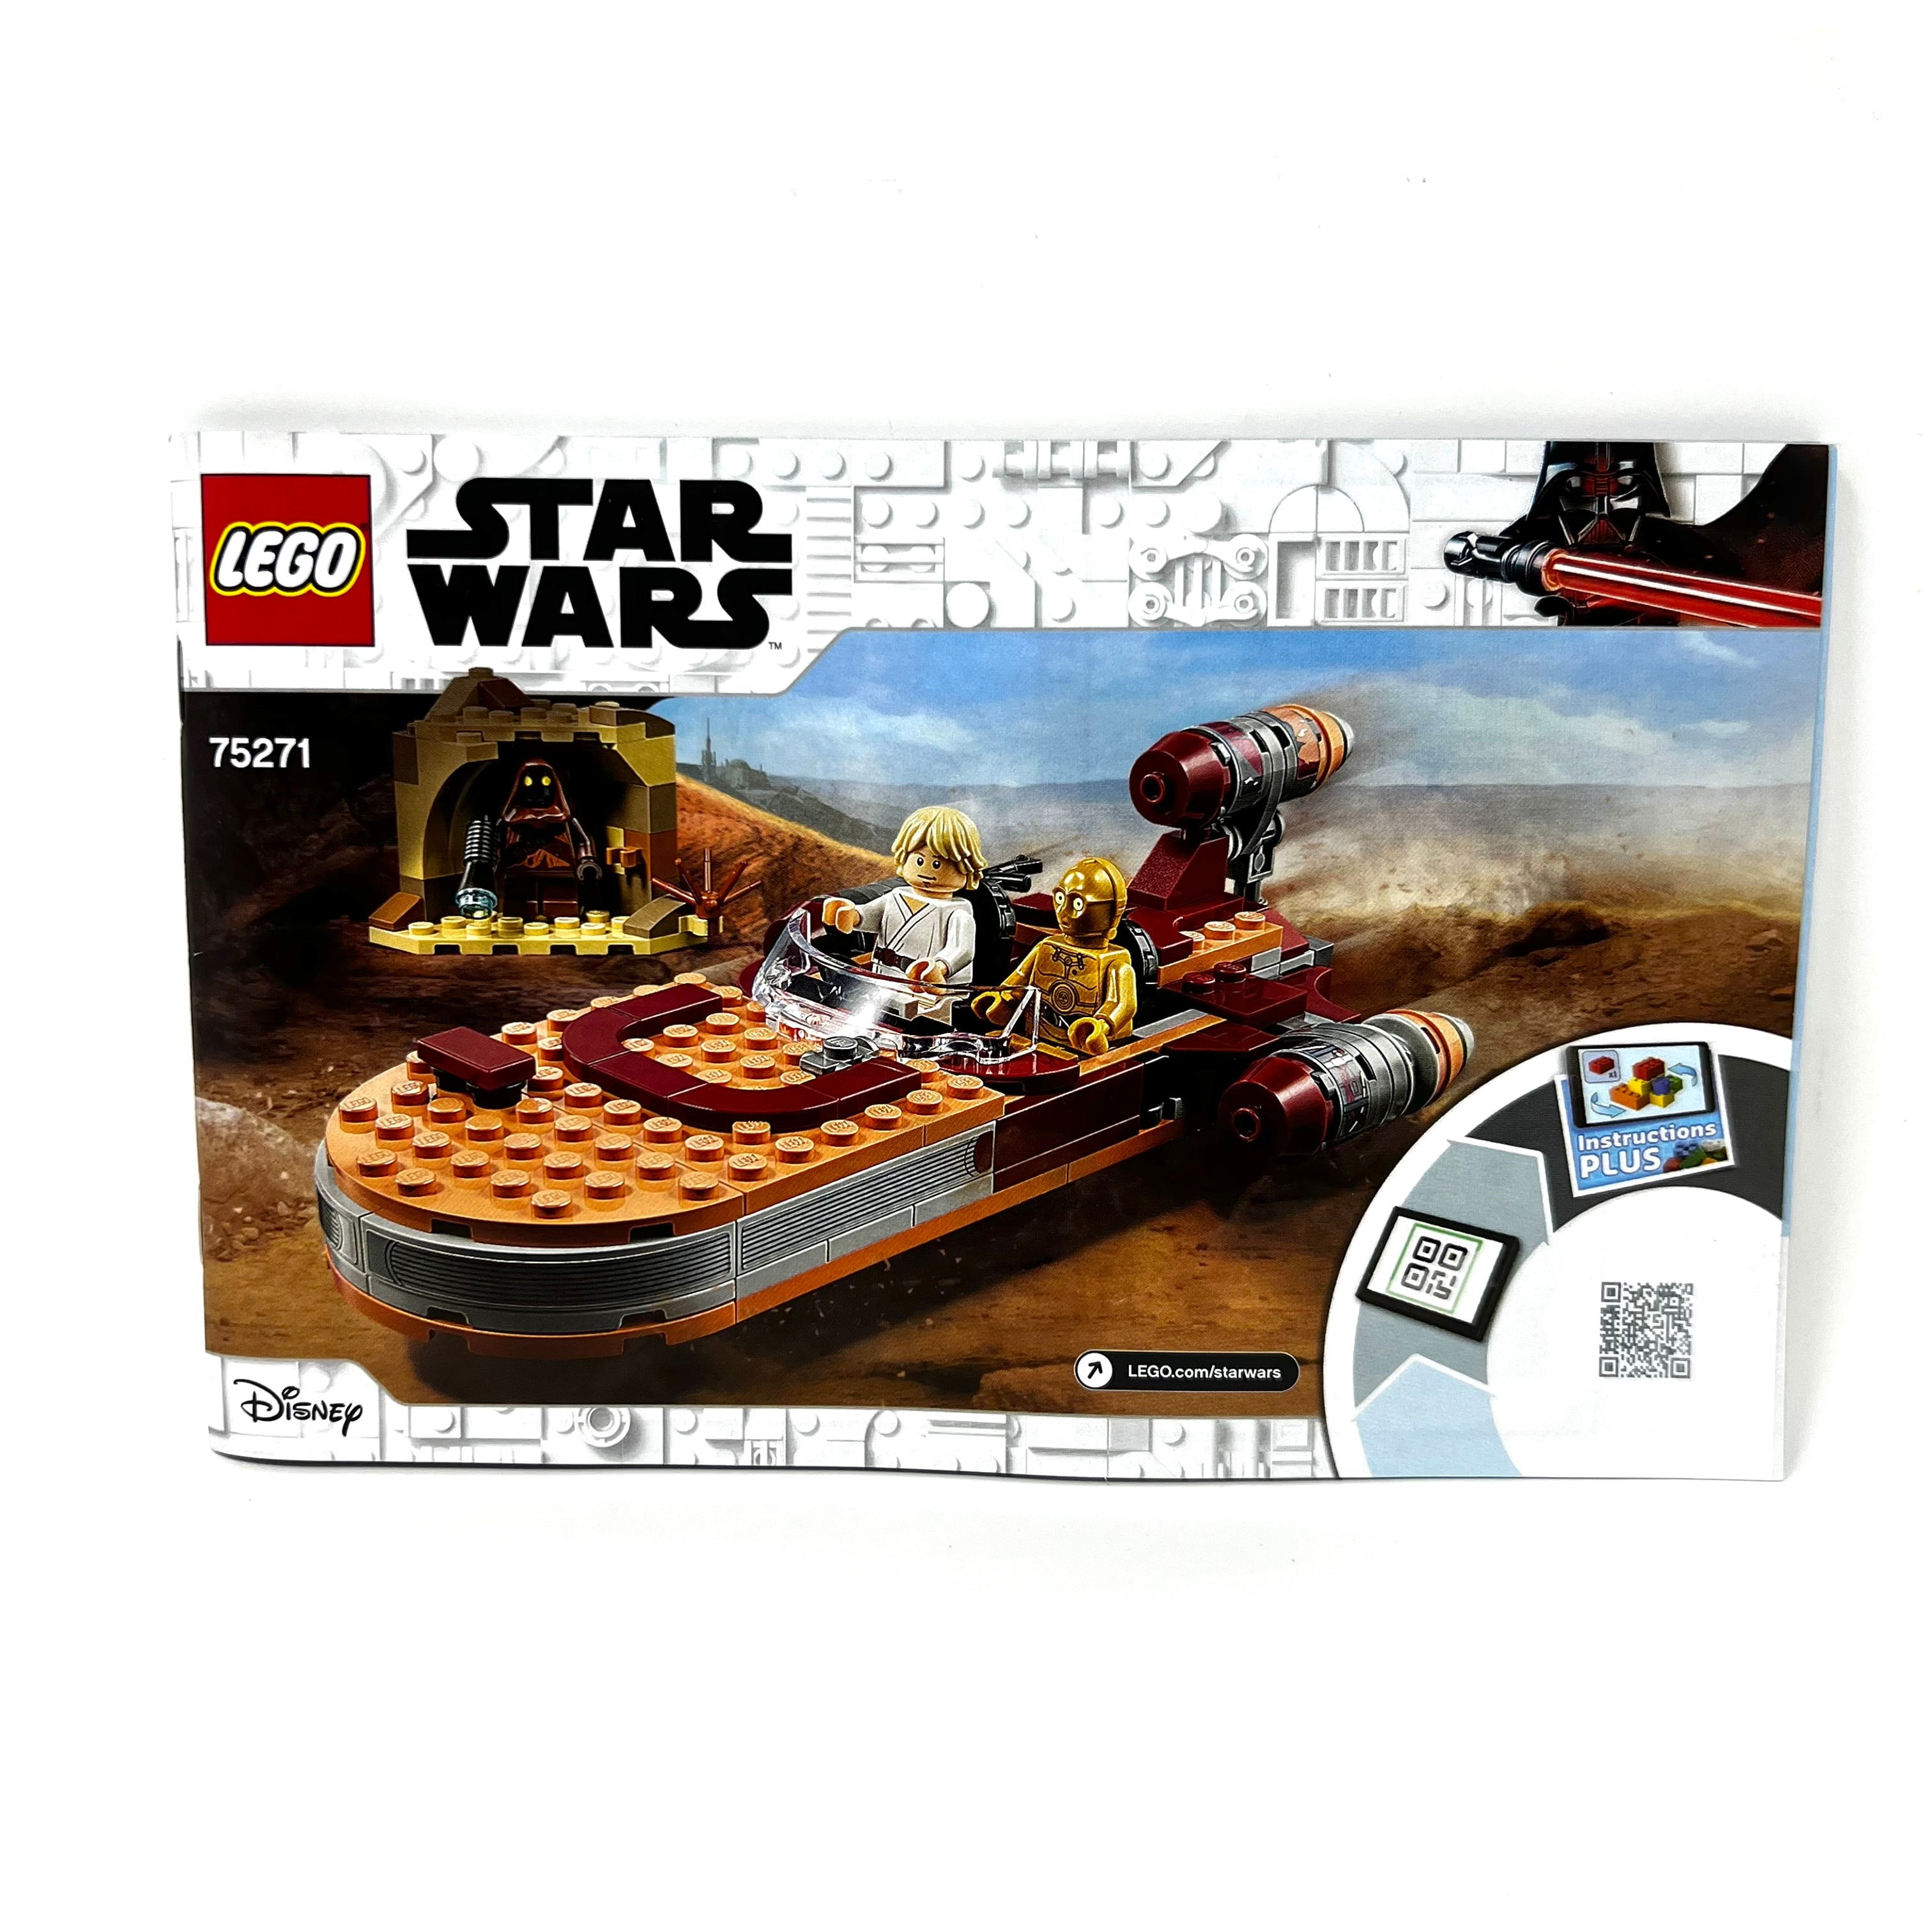 Gå en tur Hover til stede Lego Star Wars 75271 Instruction Manual Booklet Only - Walmart.com